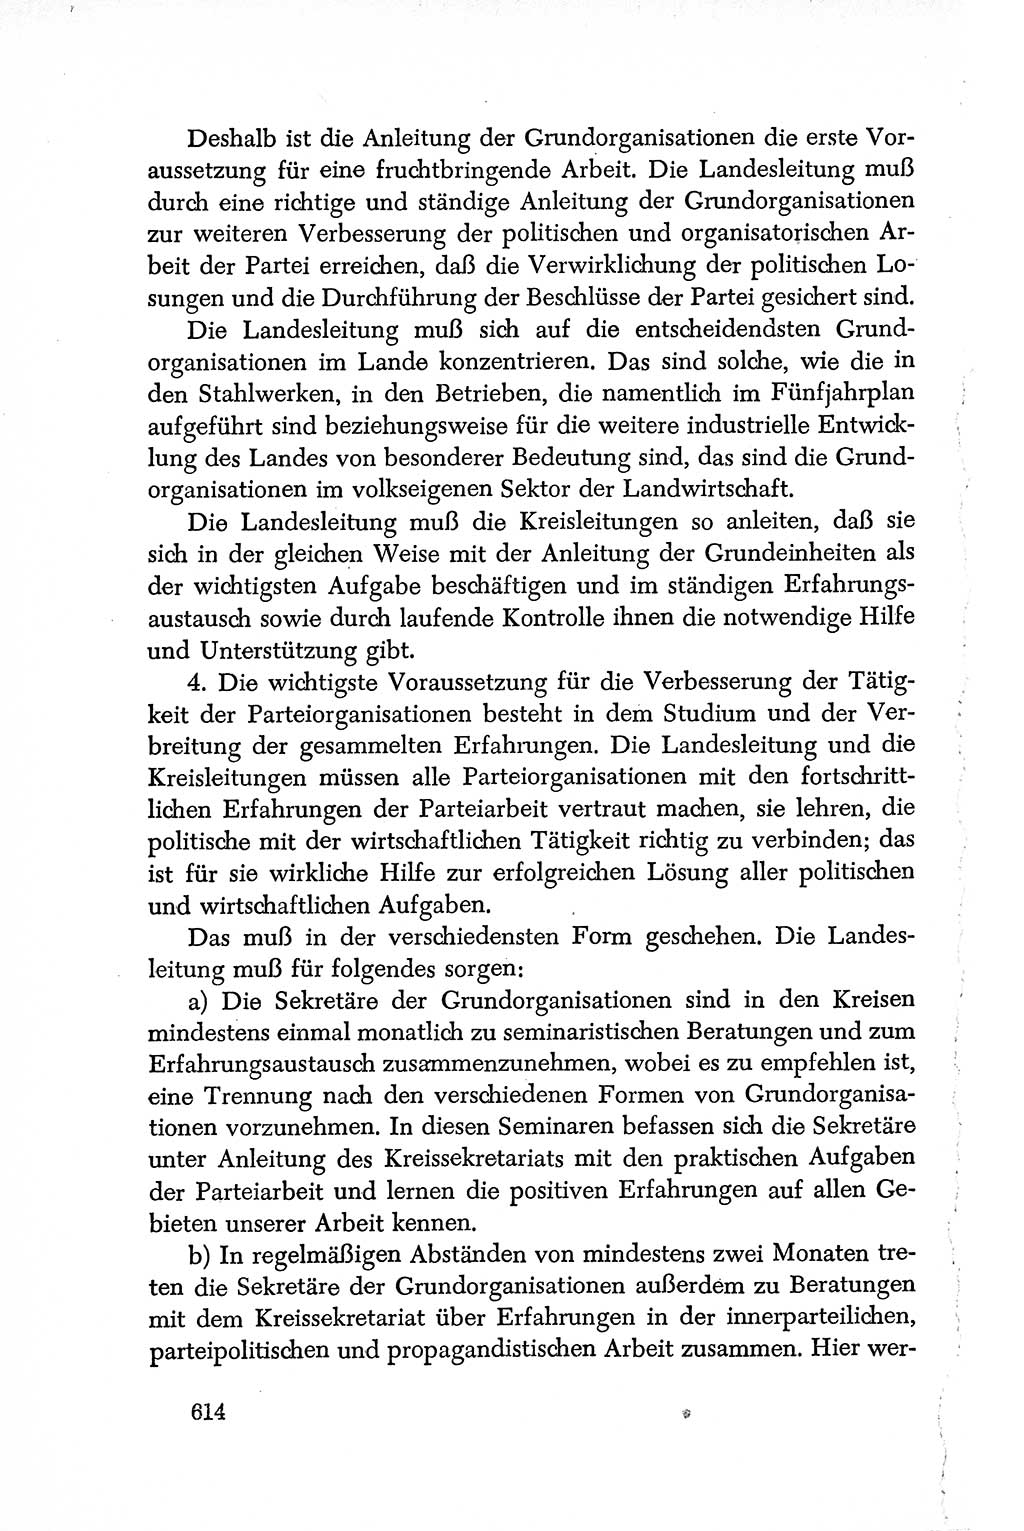 Dokumente der Sozialistischen Einheitspartei Deutschlands (SED) [Deutsche Demokratische Republik (DDR)] 1950-1952, Seite 614 (Dok. SED DDR 1950-1952, S. 614)